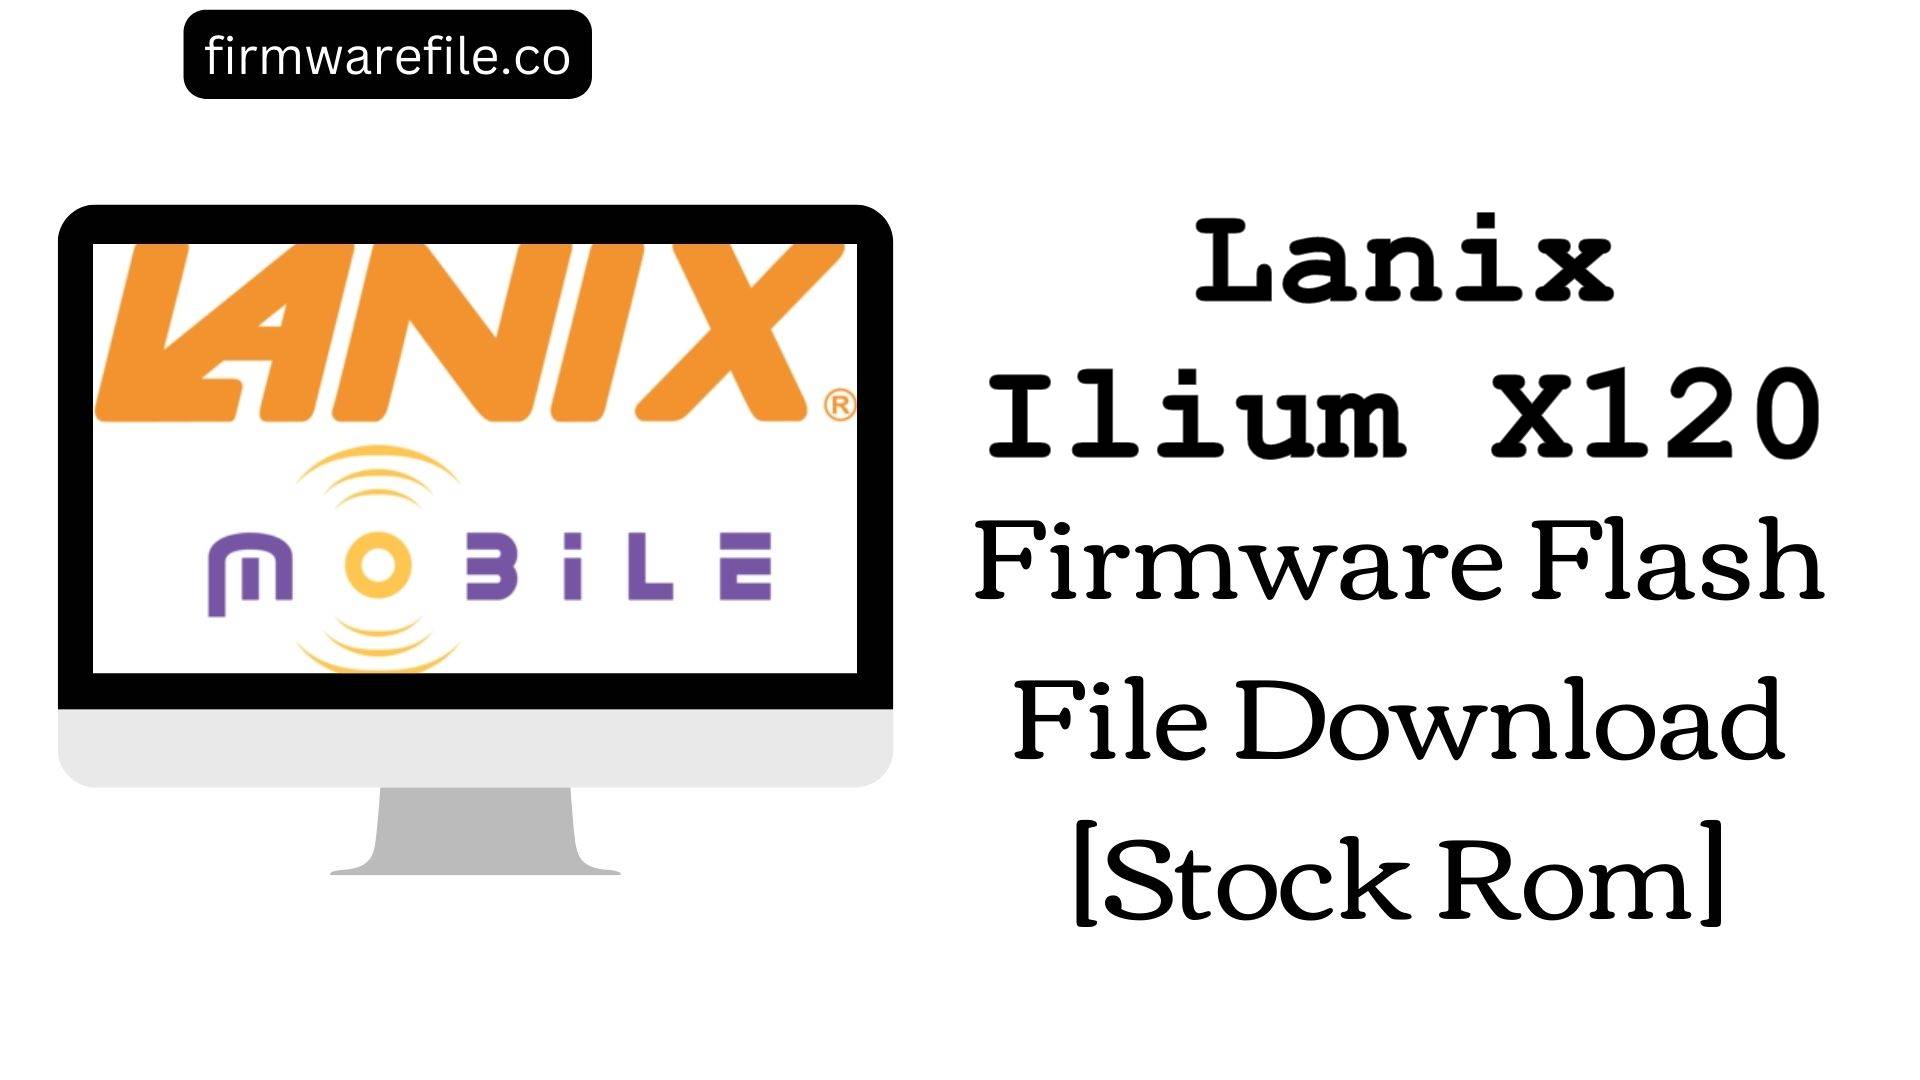 Lanix Ilium X120